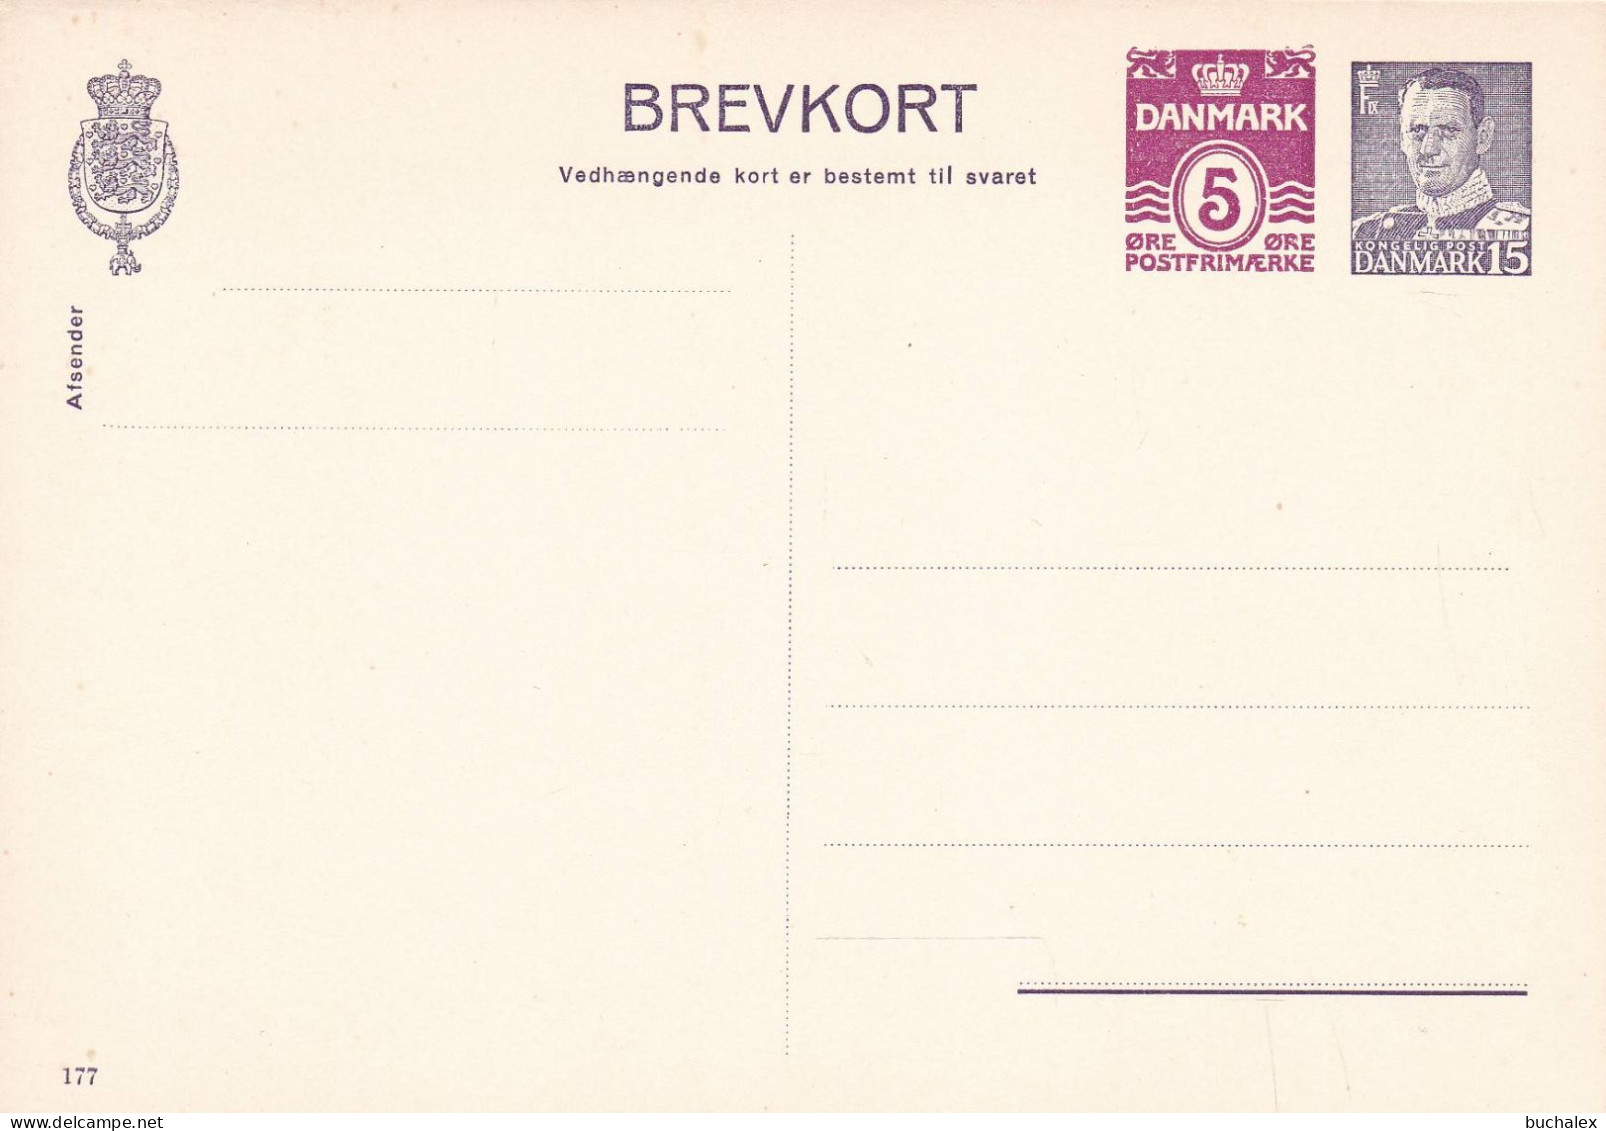 Dänemark Brevkort Med Betald Svar 5+15 öre Ungelaufen - Postal Stationery